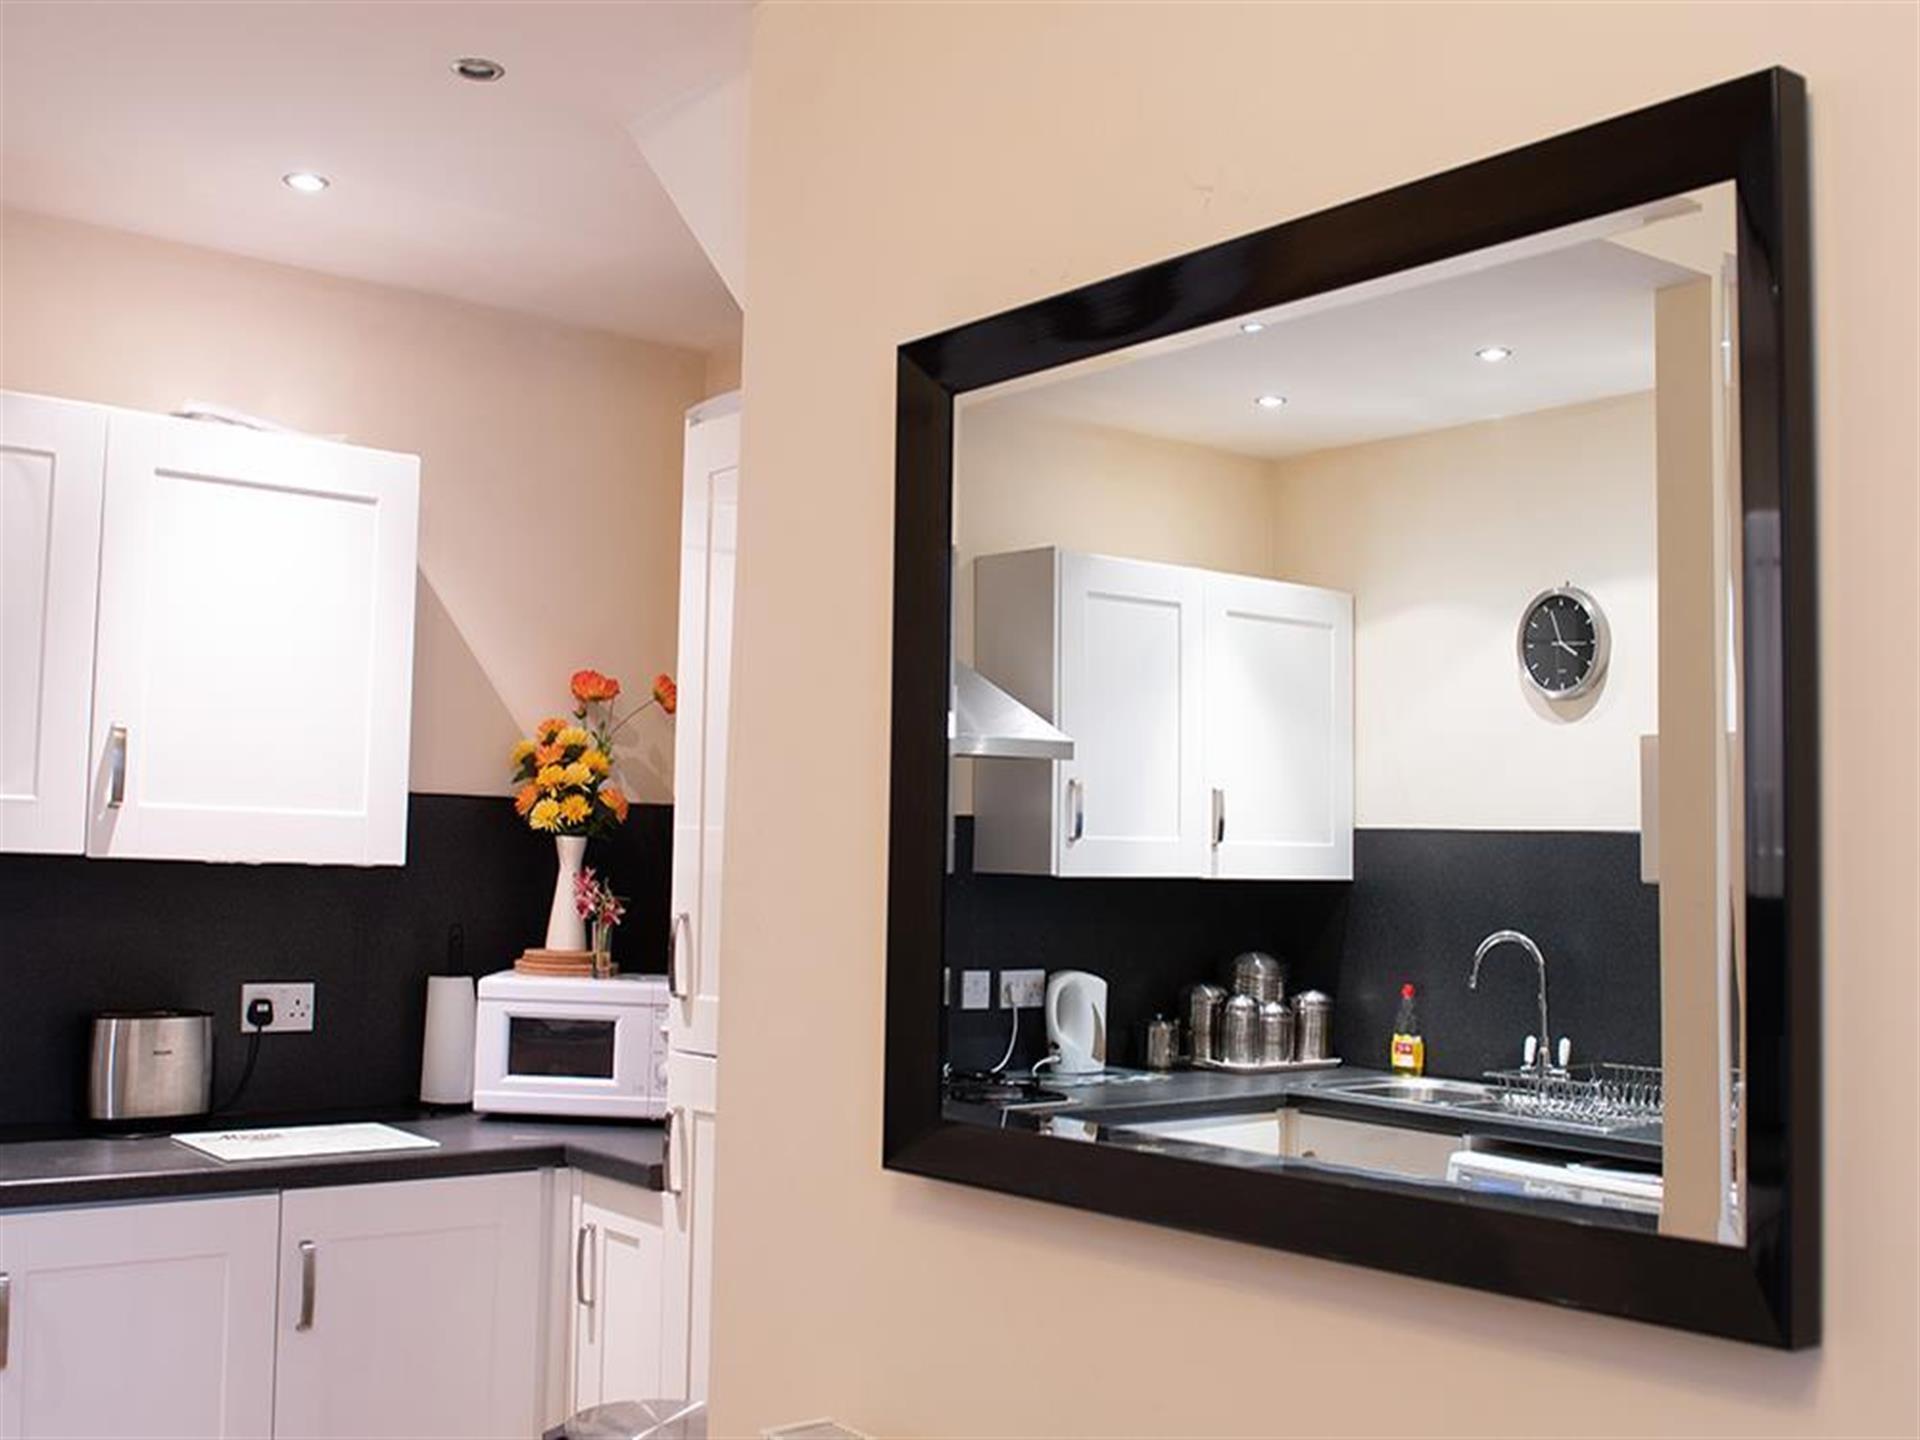 Honeydew kitchen-diner reflected in a mirror